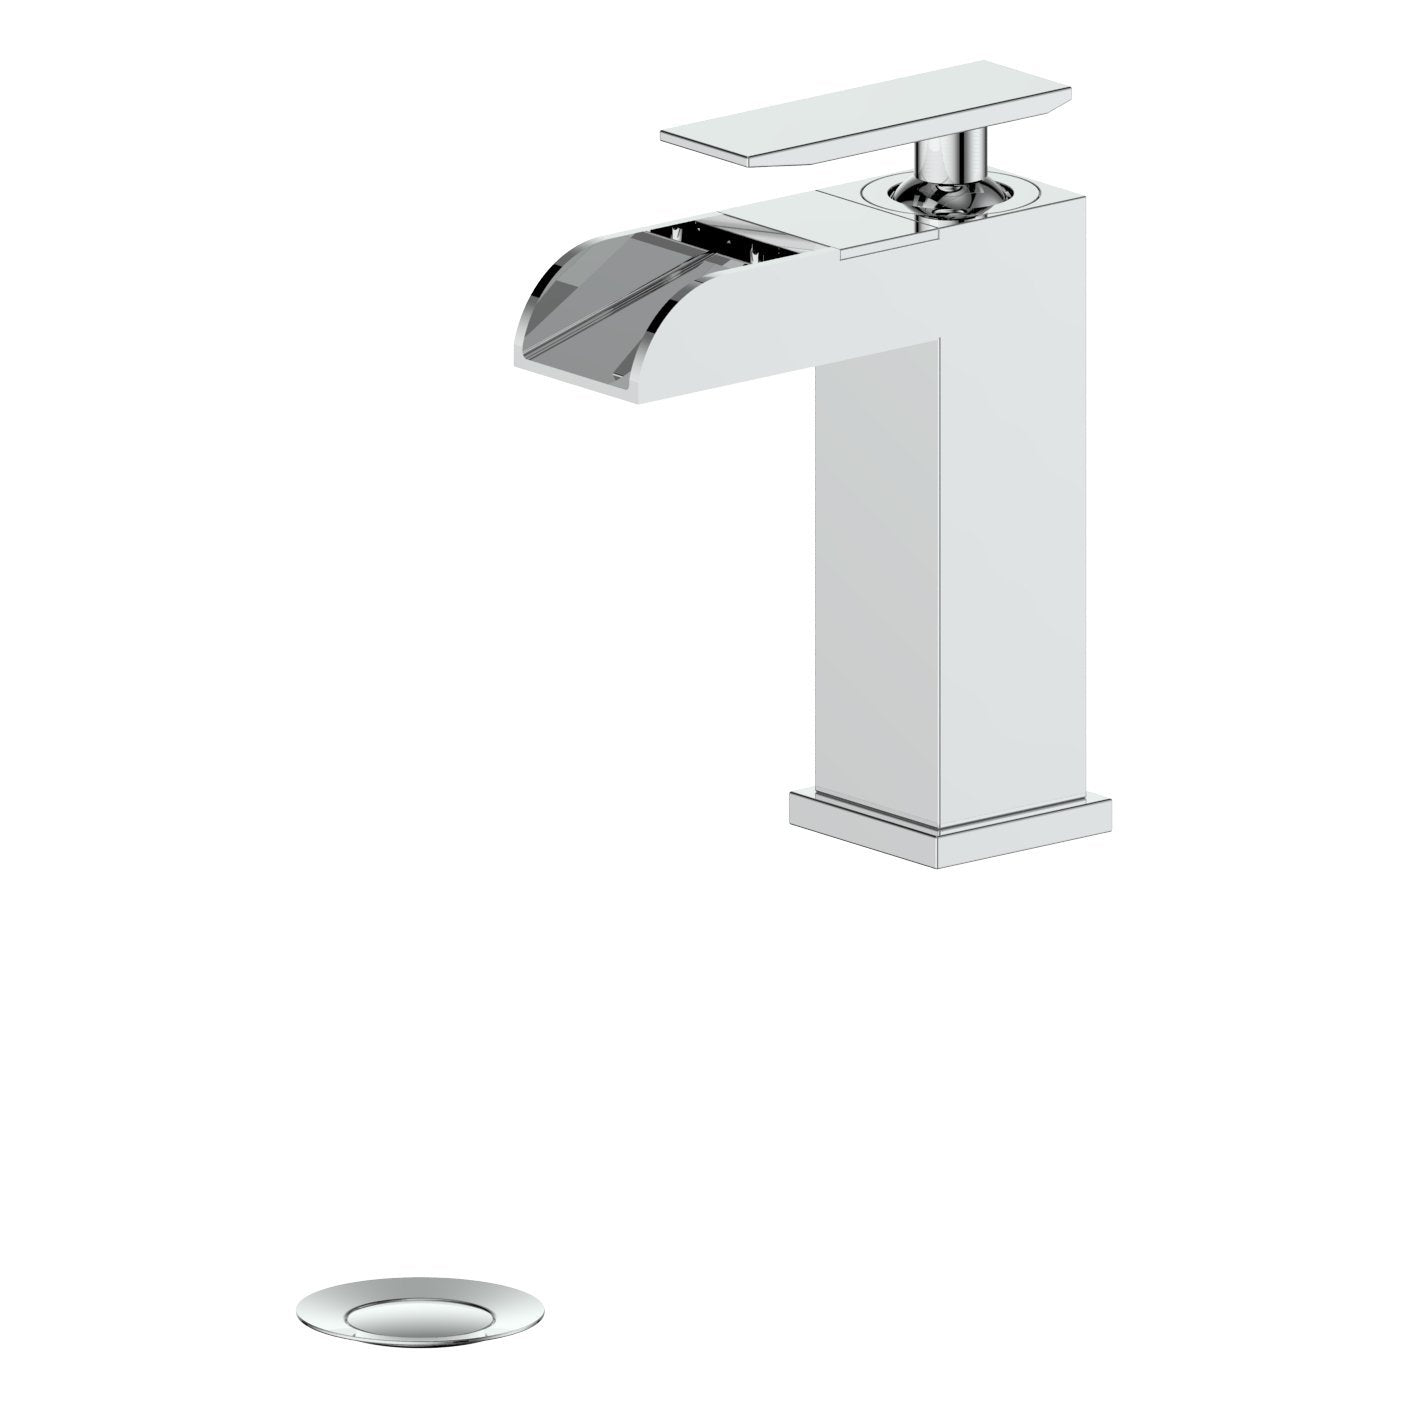 ZLINE Kitchen and Bath, ZLINE Homewood Bath Faucet in Chrome (HMD-BF-CH), HMD-BF-CH,